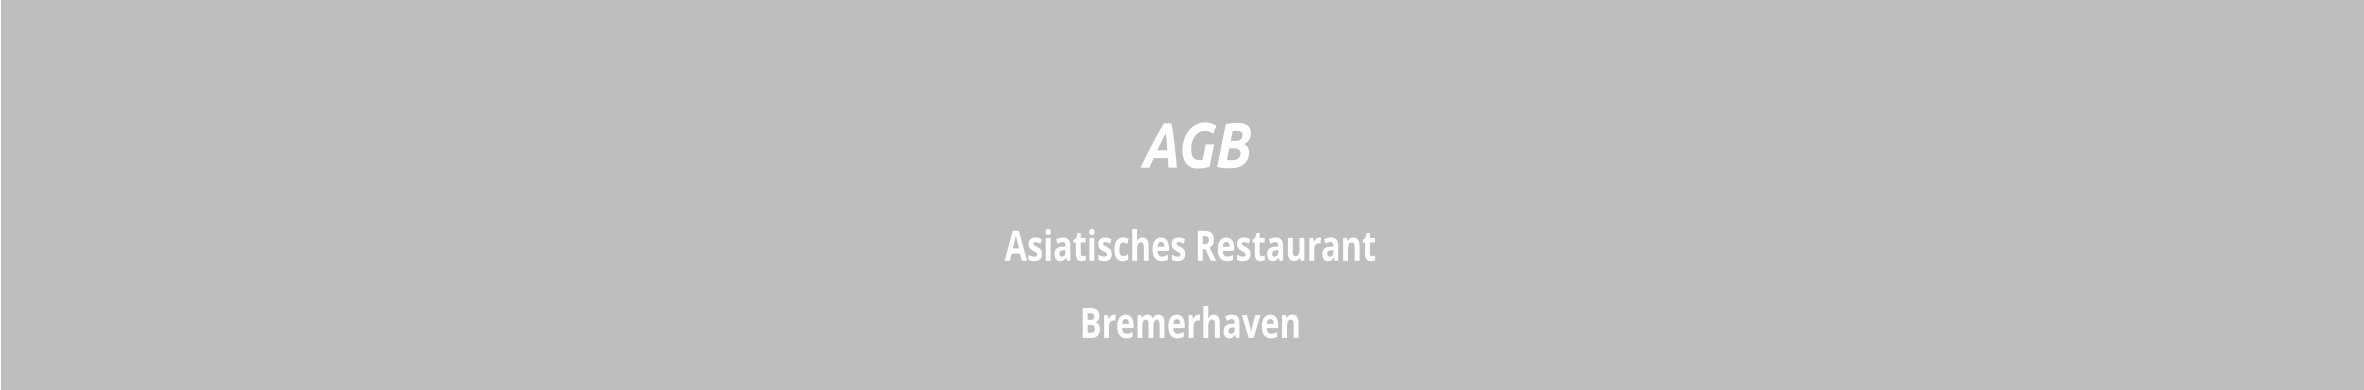 Asiatisches Restaurant  Bremerhaven  AGB